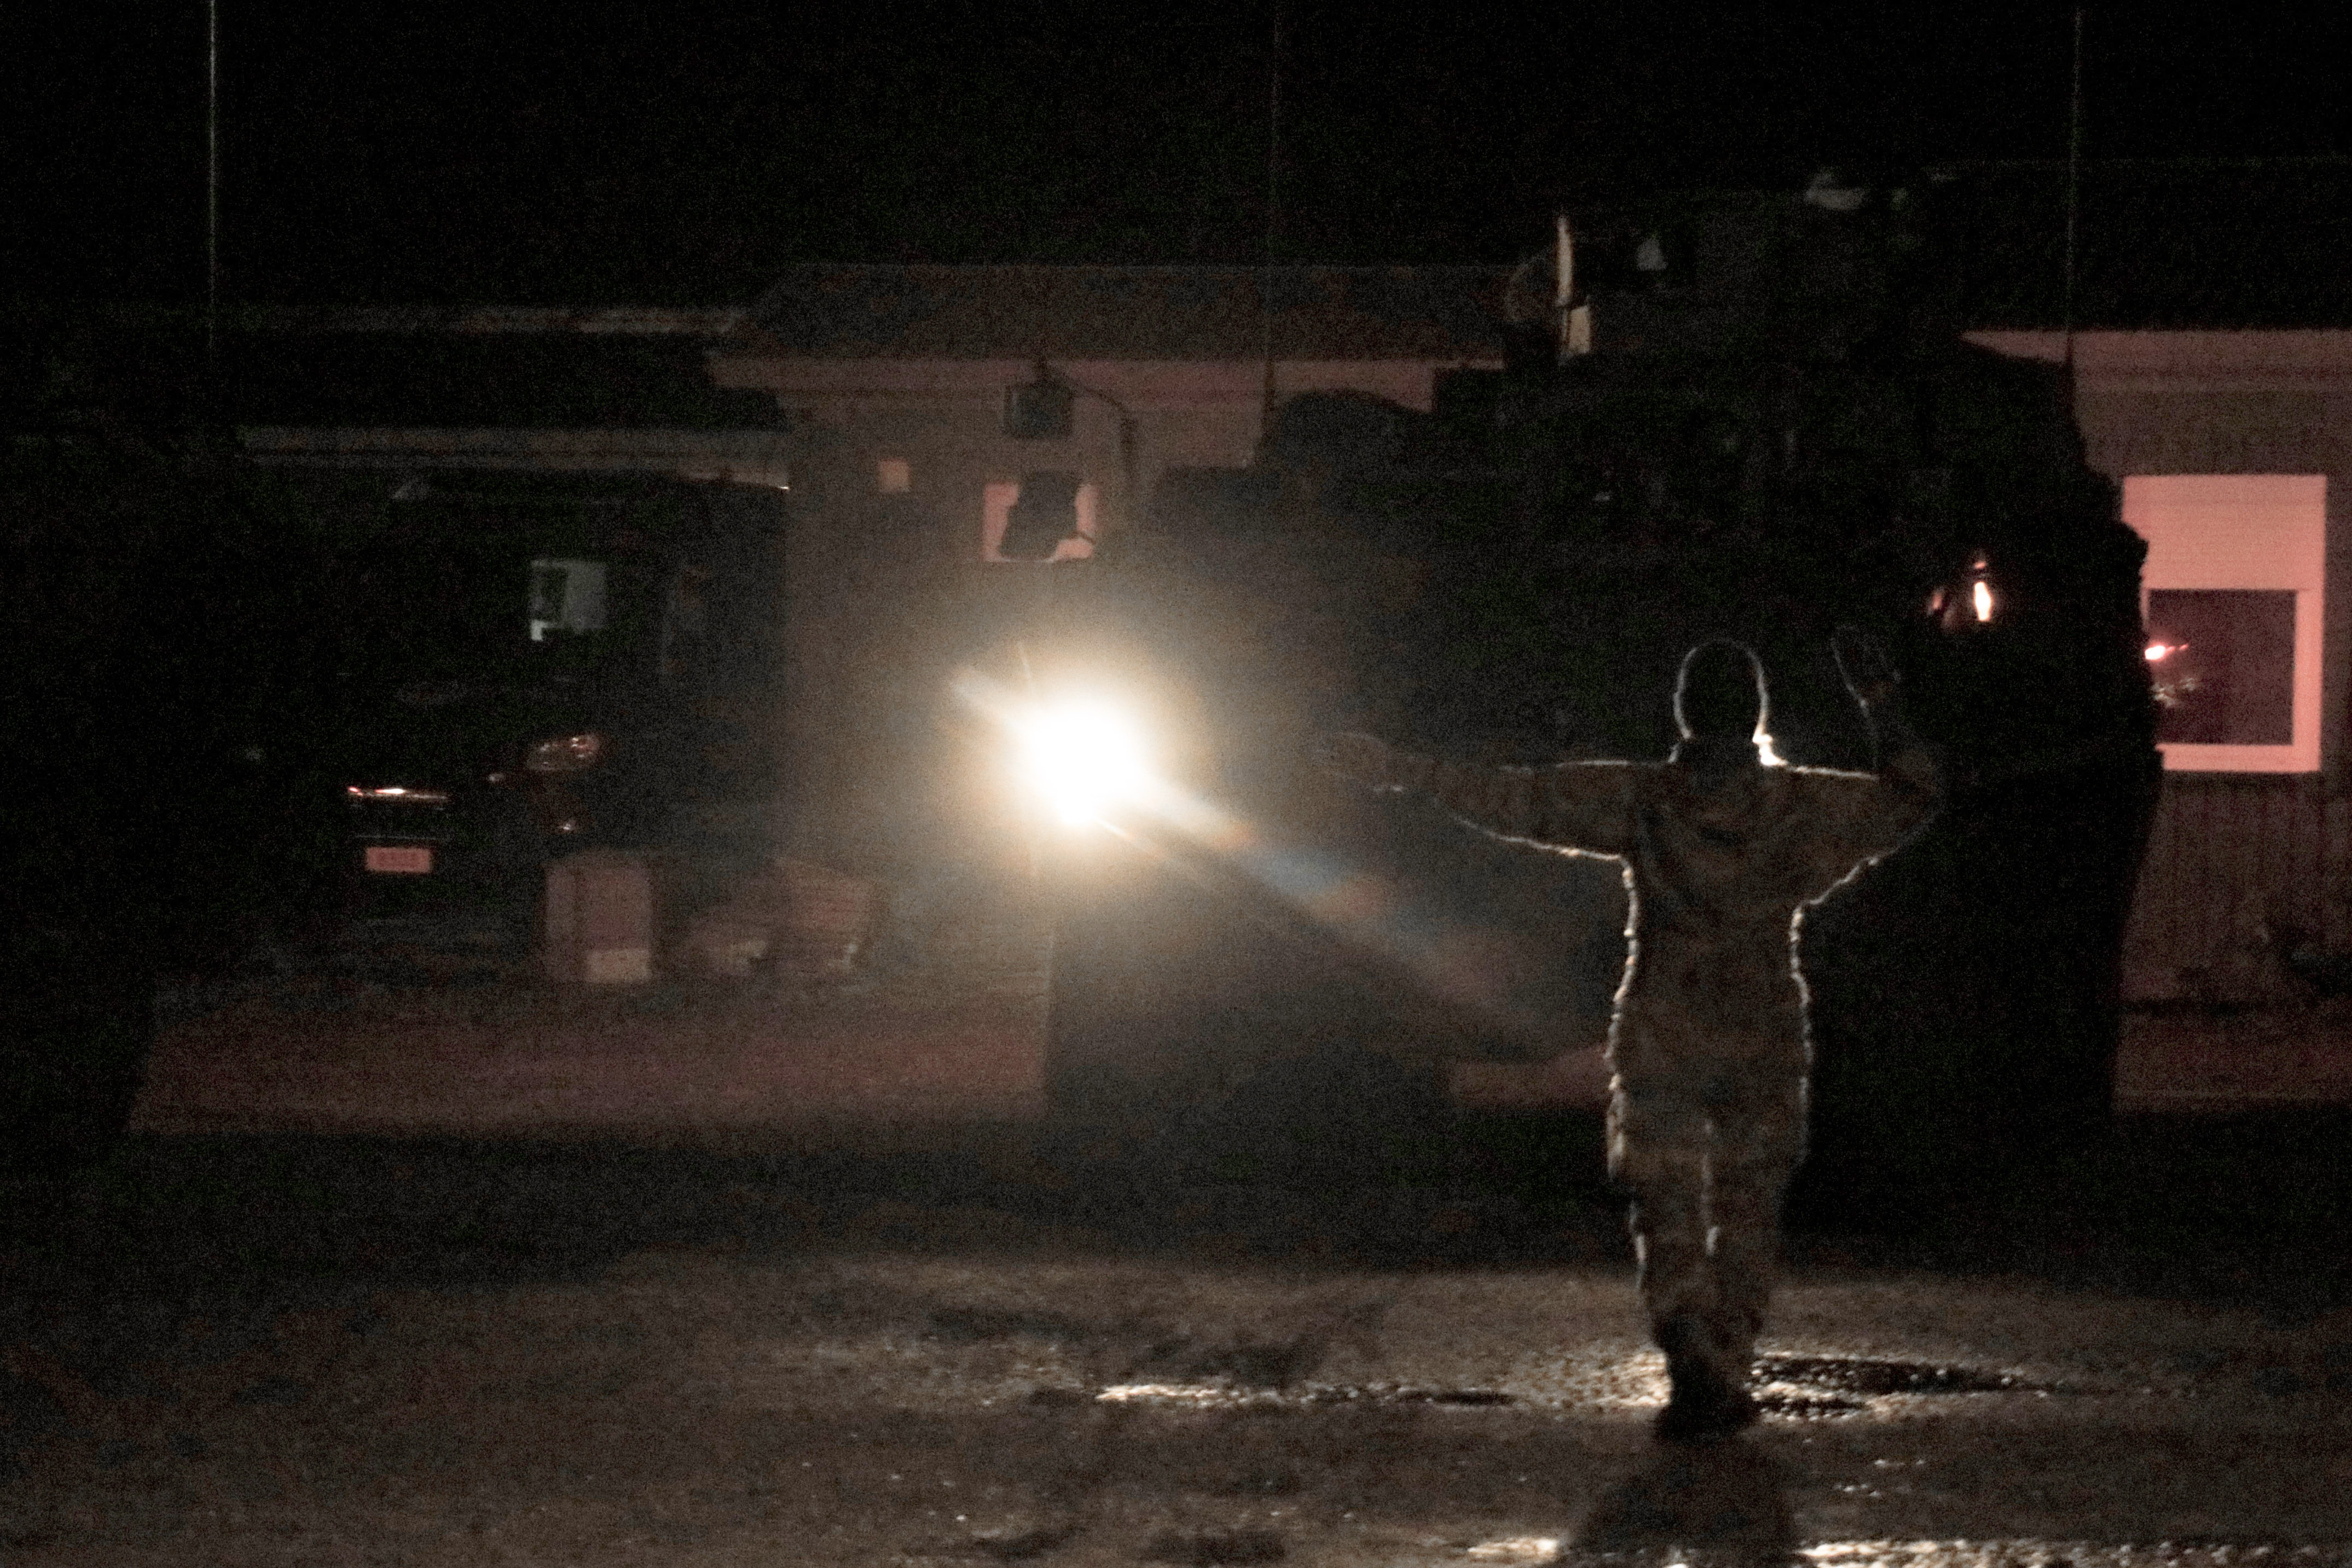 Tanskalainen sotilas opastaa käsimerkein ajoneuvoa pimeässä illassa.